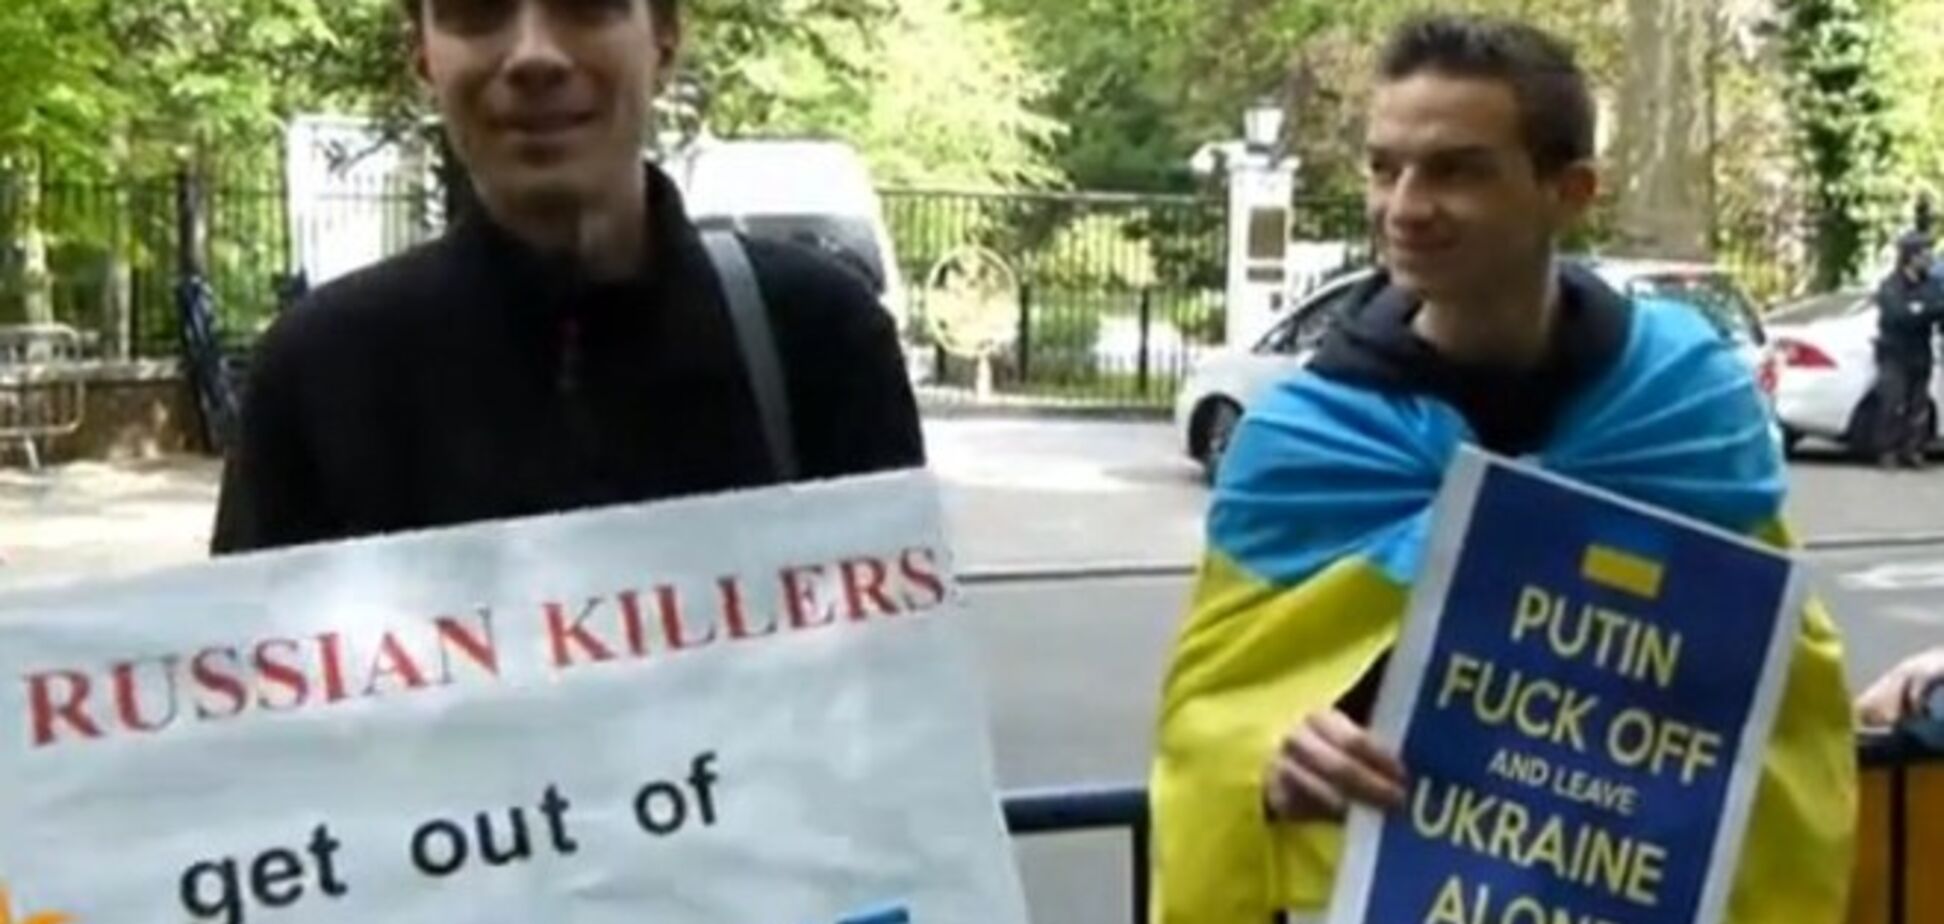 Українські студенти в Бельгії протестували проти 'путінських кілерів'